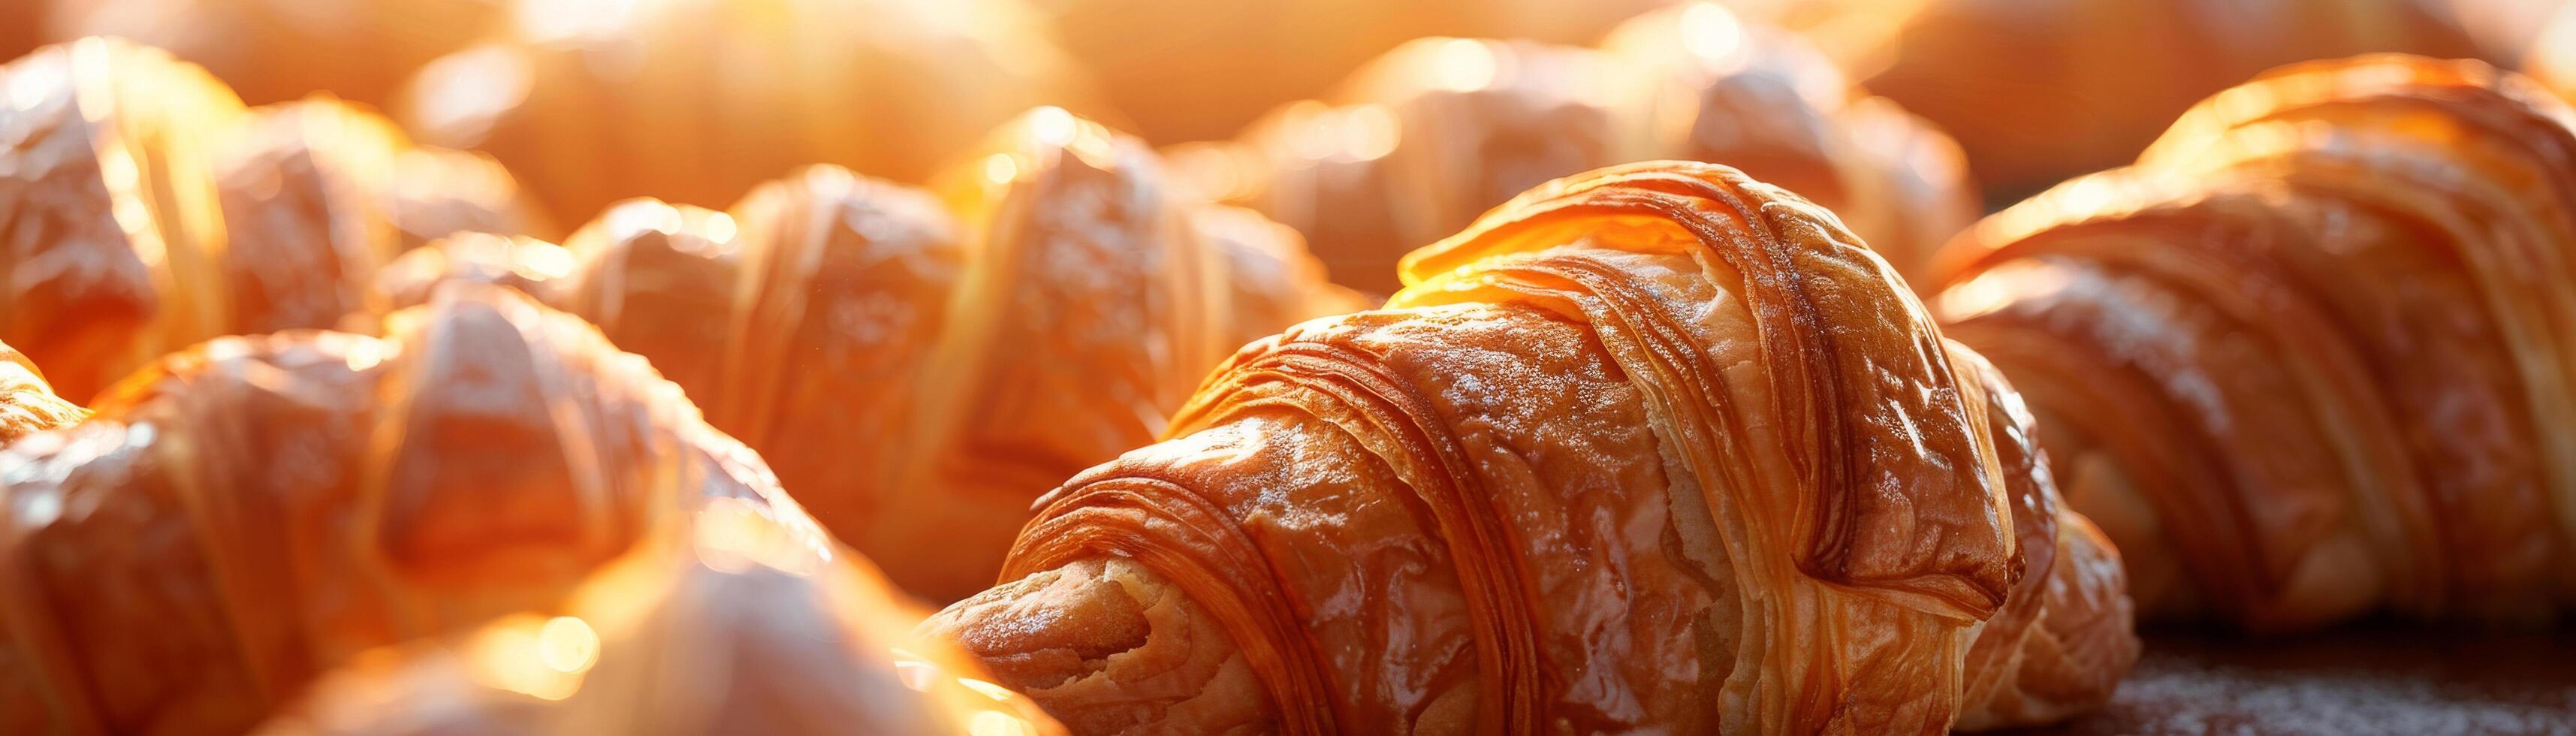 un serie de croissants disfrutar en el resplandor de el amanecer, su crujiente, dorado capas iluminado y atractivo foto